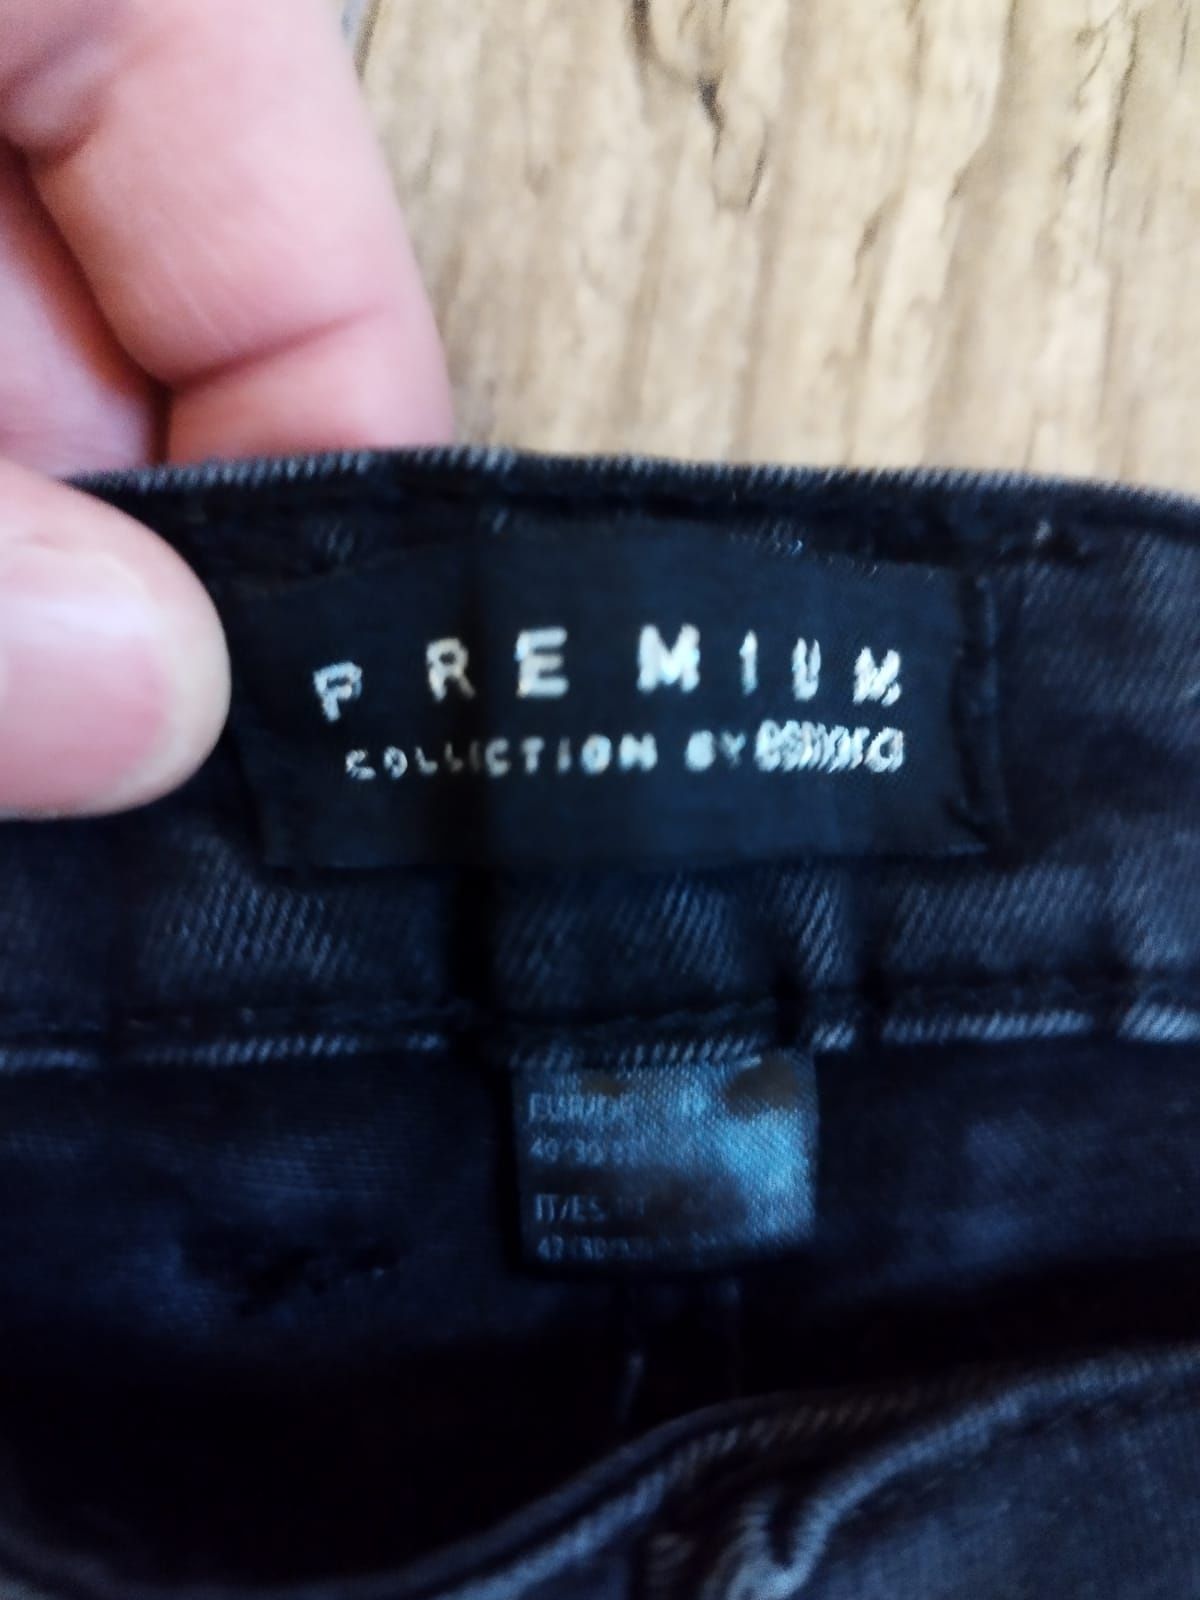 Spodnie jeans opium damskie rozmiar S premium